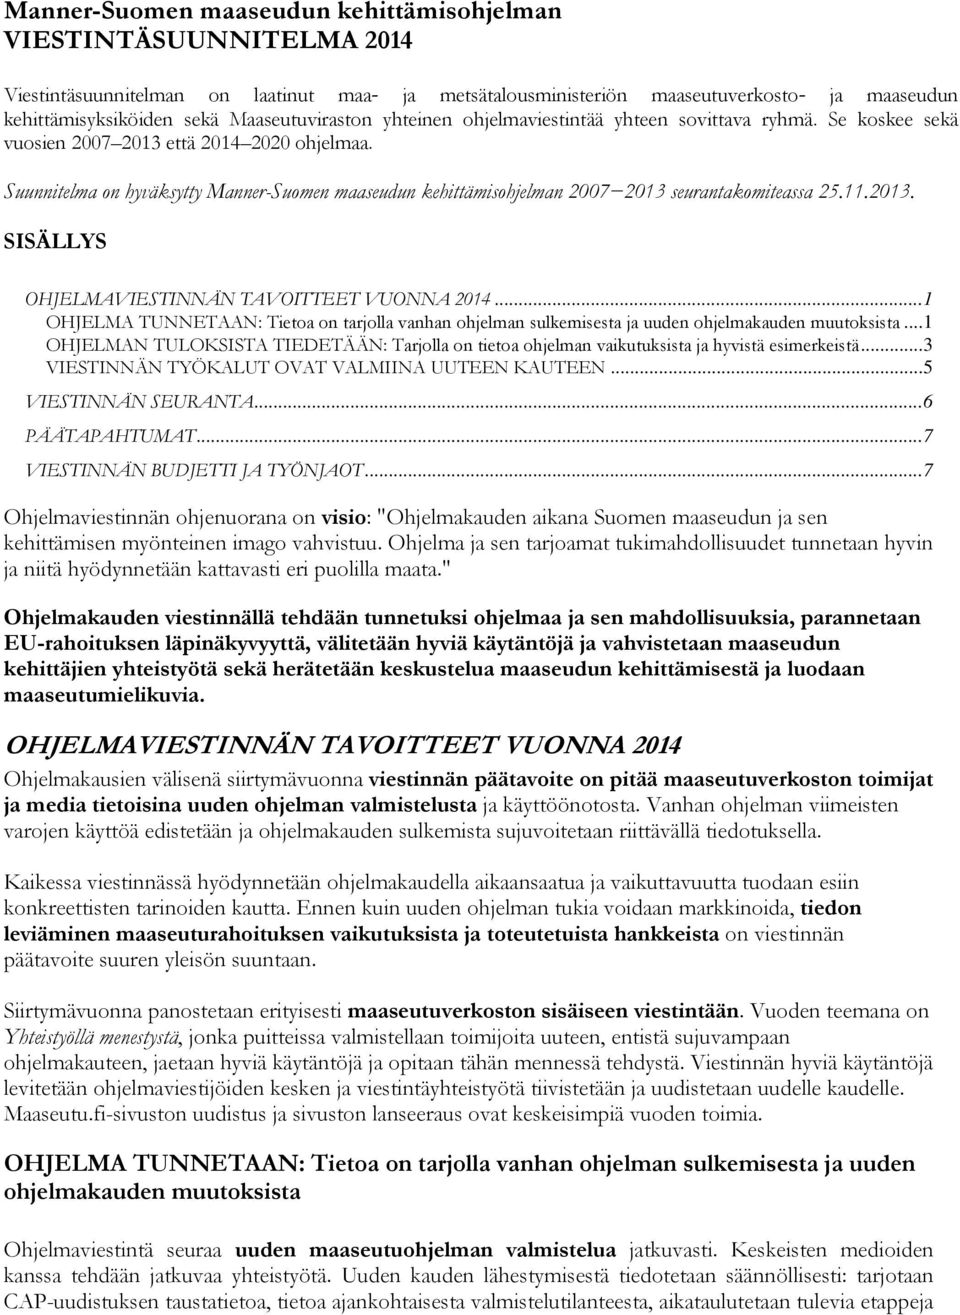 Suunnitelma on hyväksytty Manner-Suomen maaseudun kehittämisohjelman 2007 2013 seurantakomiteassa 25.11.2013. SISÄLLYS OHJELMAVIESTINNÄN TAVOITTEET VUONNA 2014.